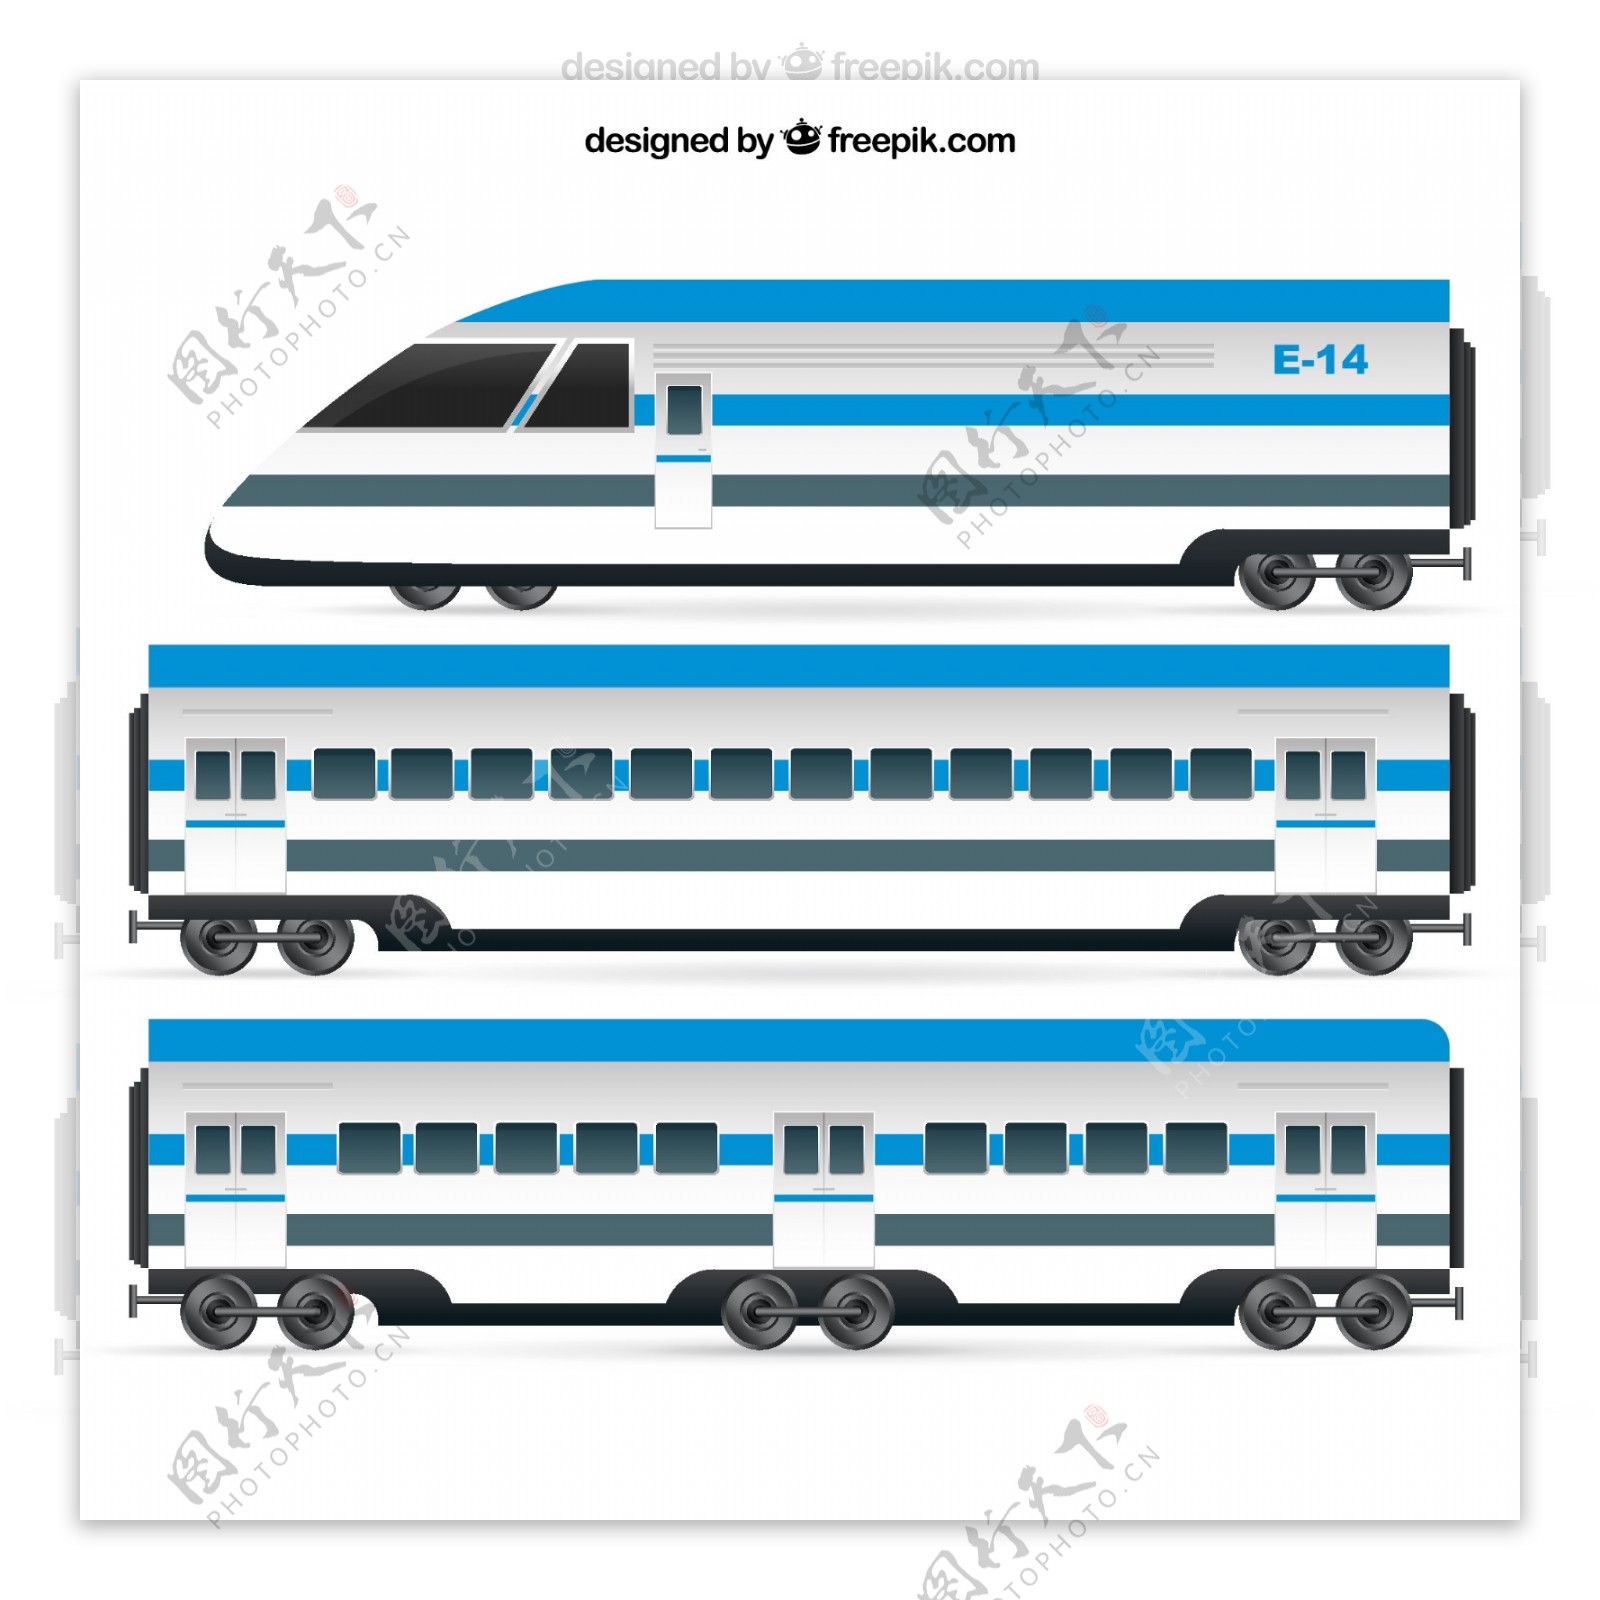 蓝色火车车头和车厢矢量素材